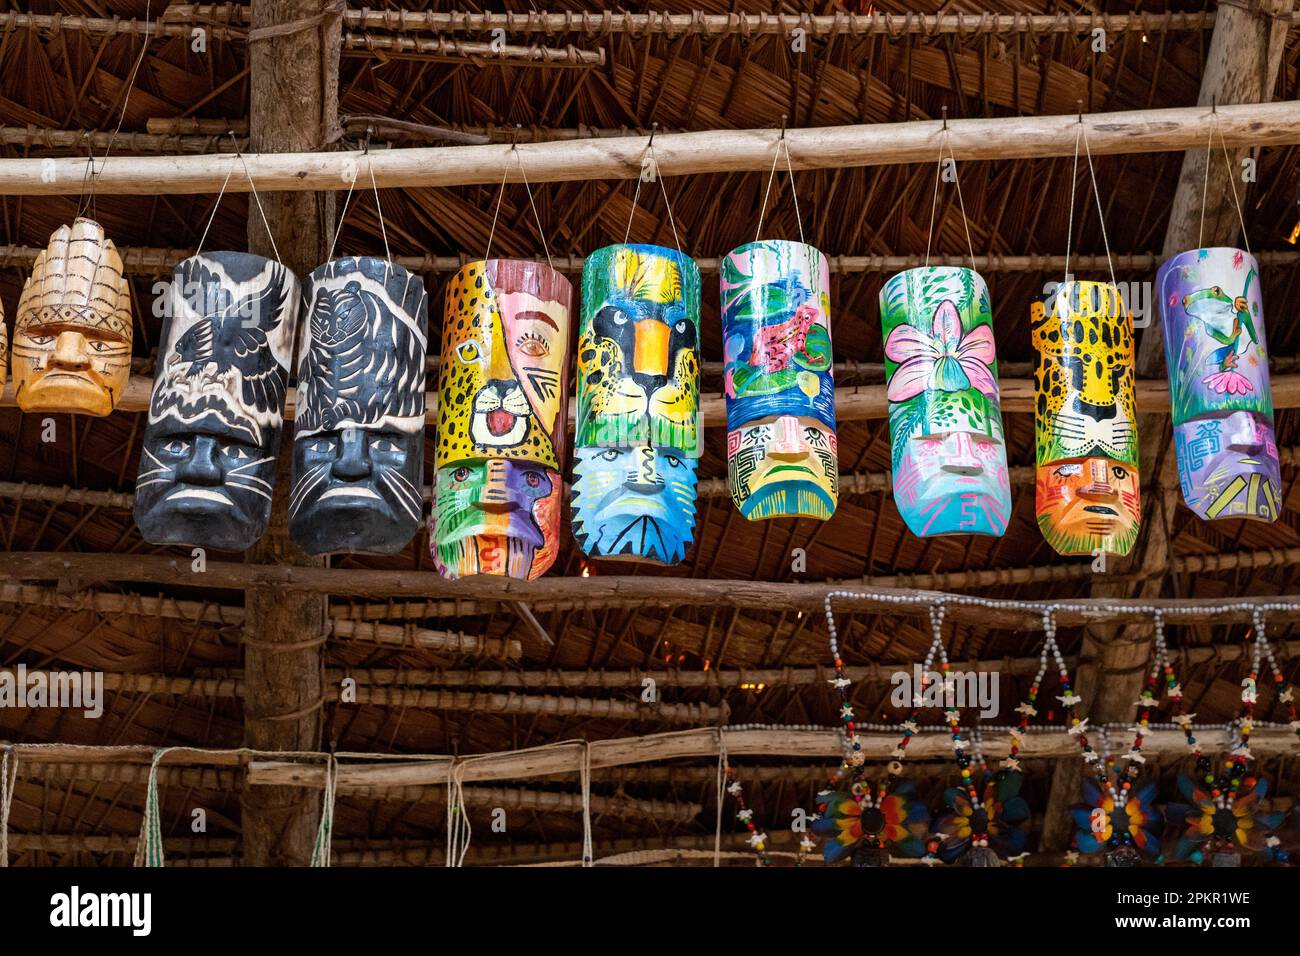 Les masques de Bora sculptés et peints à la main sont vendus comme source de revenu pour la tribu autochtone d'Iquitos, au Pérou Banque D'Images